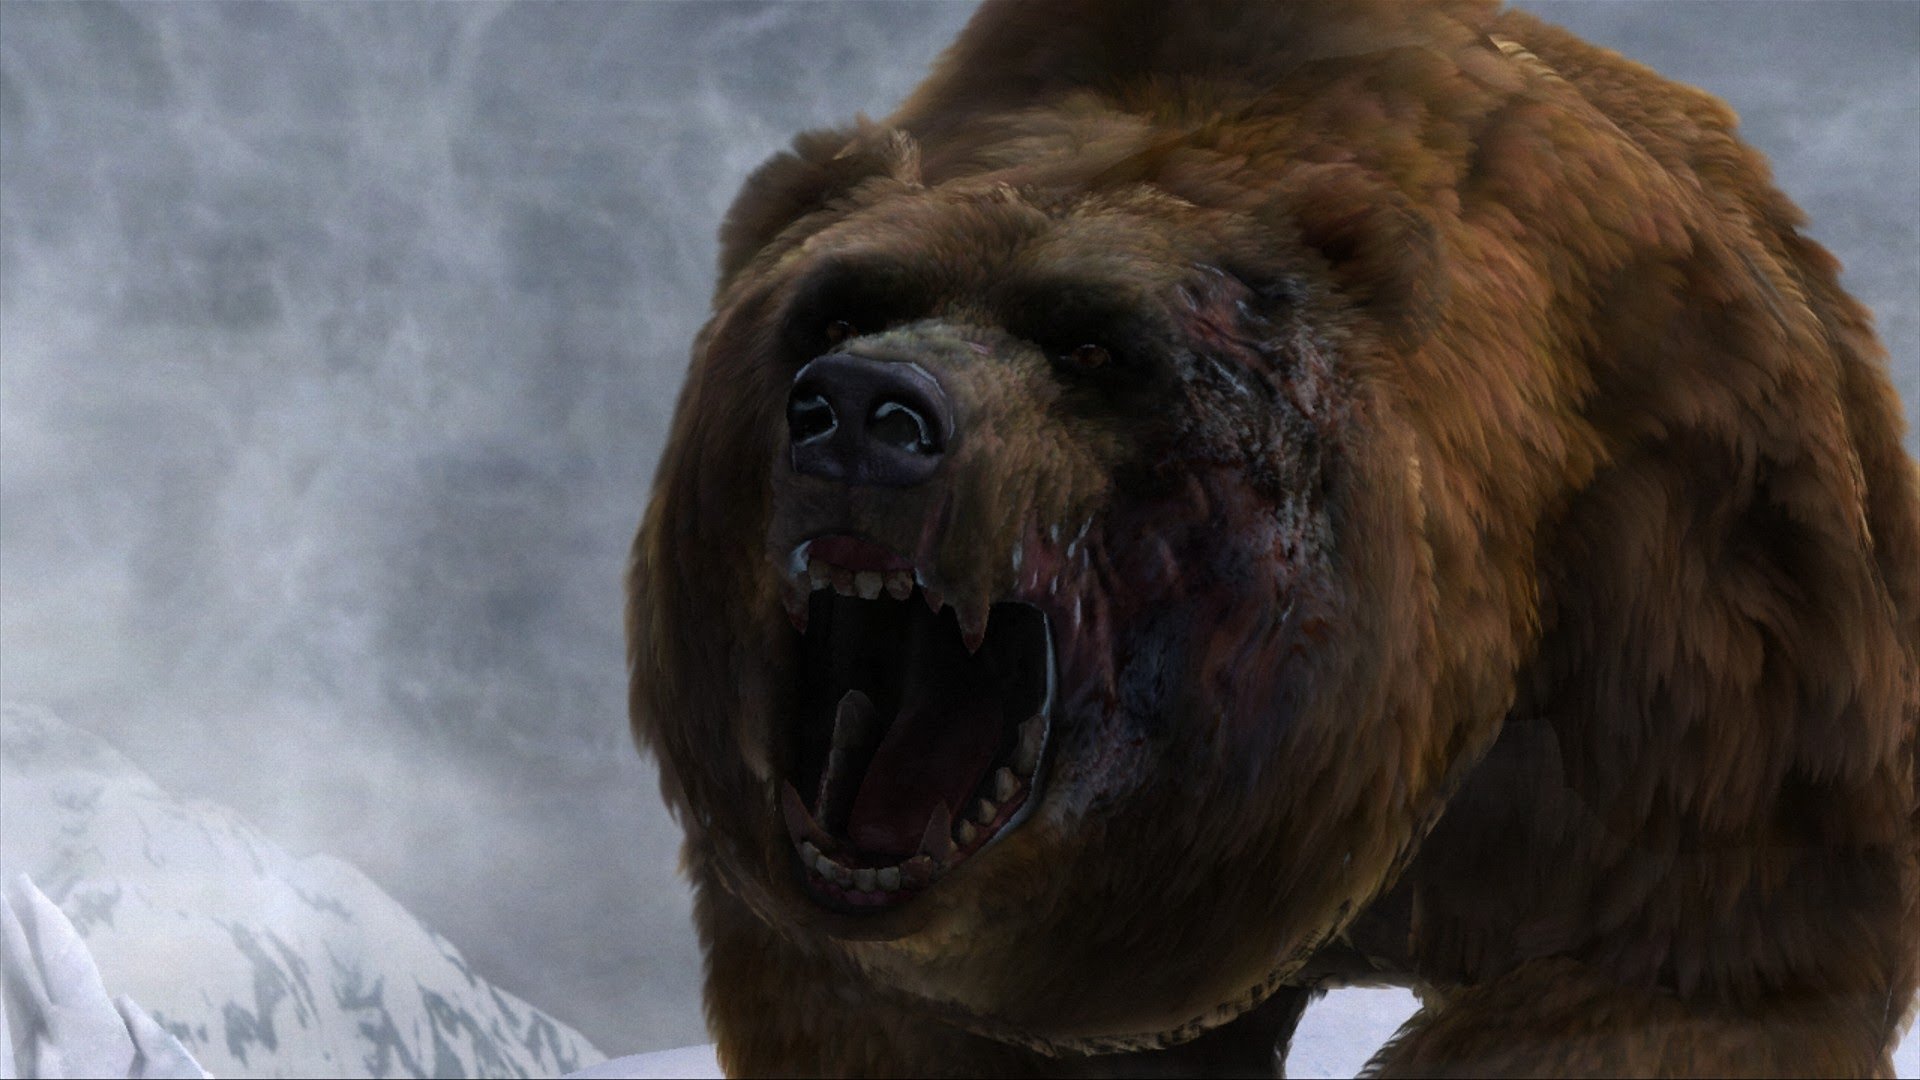 Разъяренно часть. Cabela's Dangerous hunts 2013. Кабелас дангероус Хантс 2013. Гигантский Короткомордый медведь. Медведь Гризли оскал.